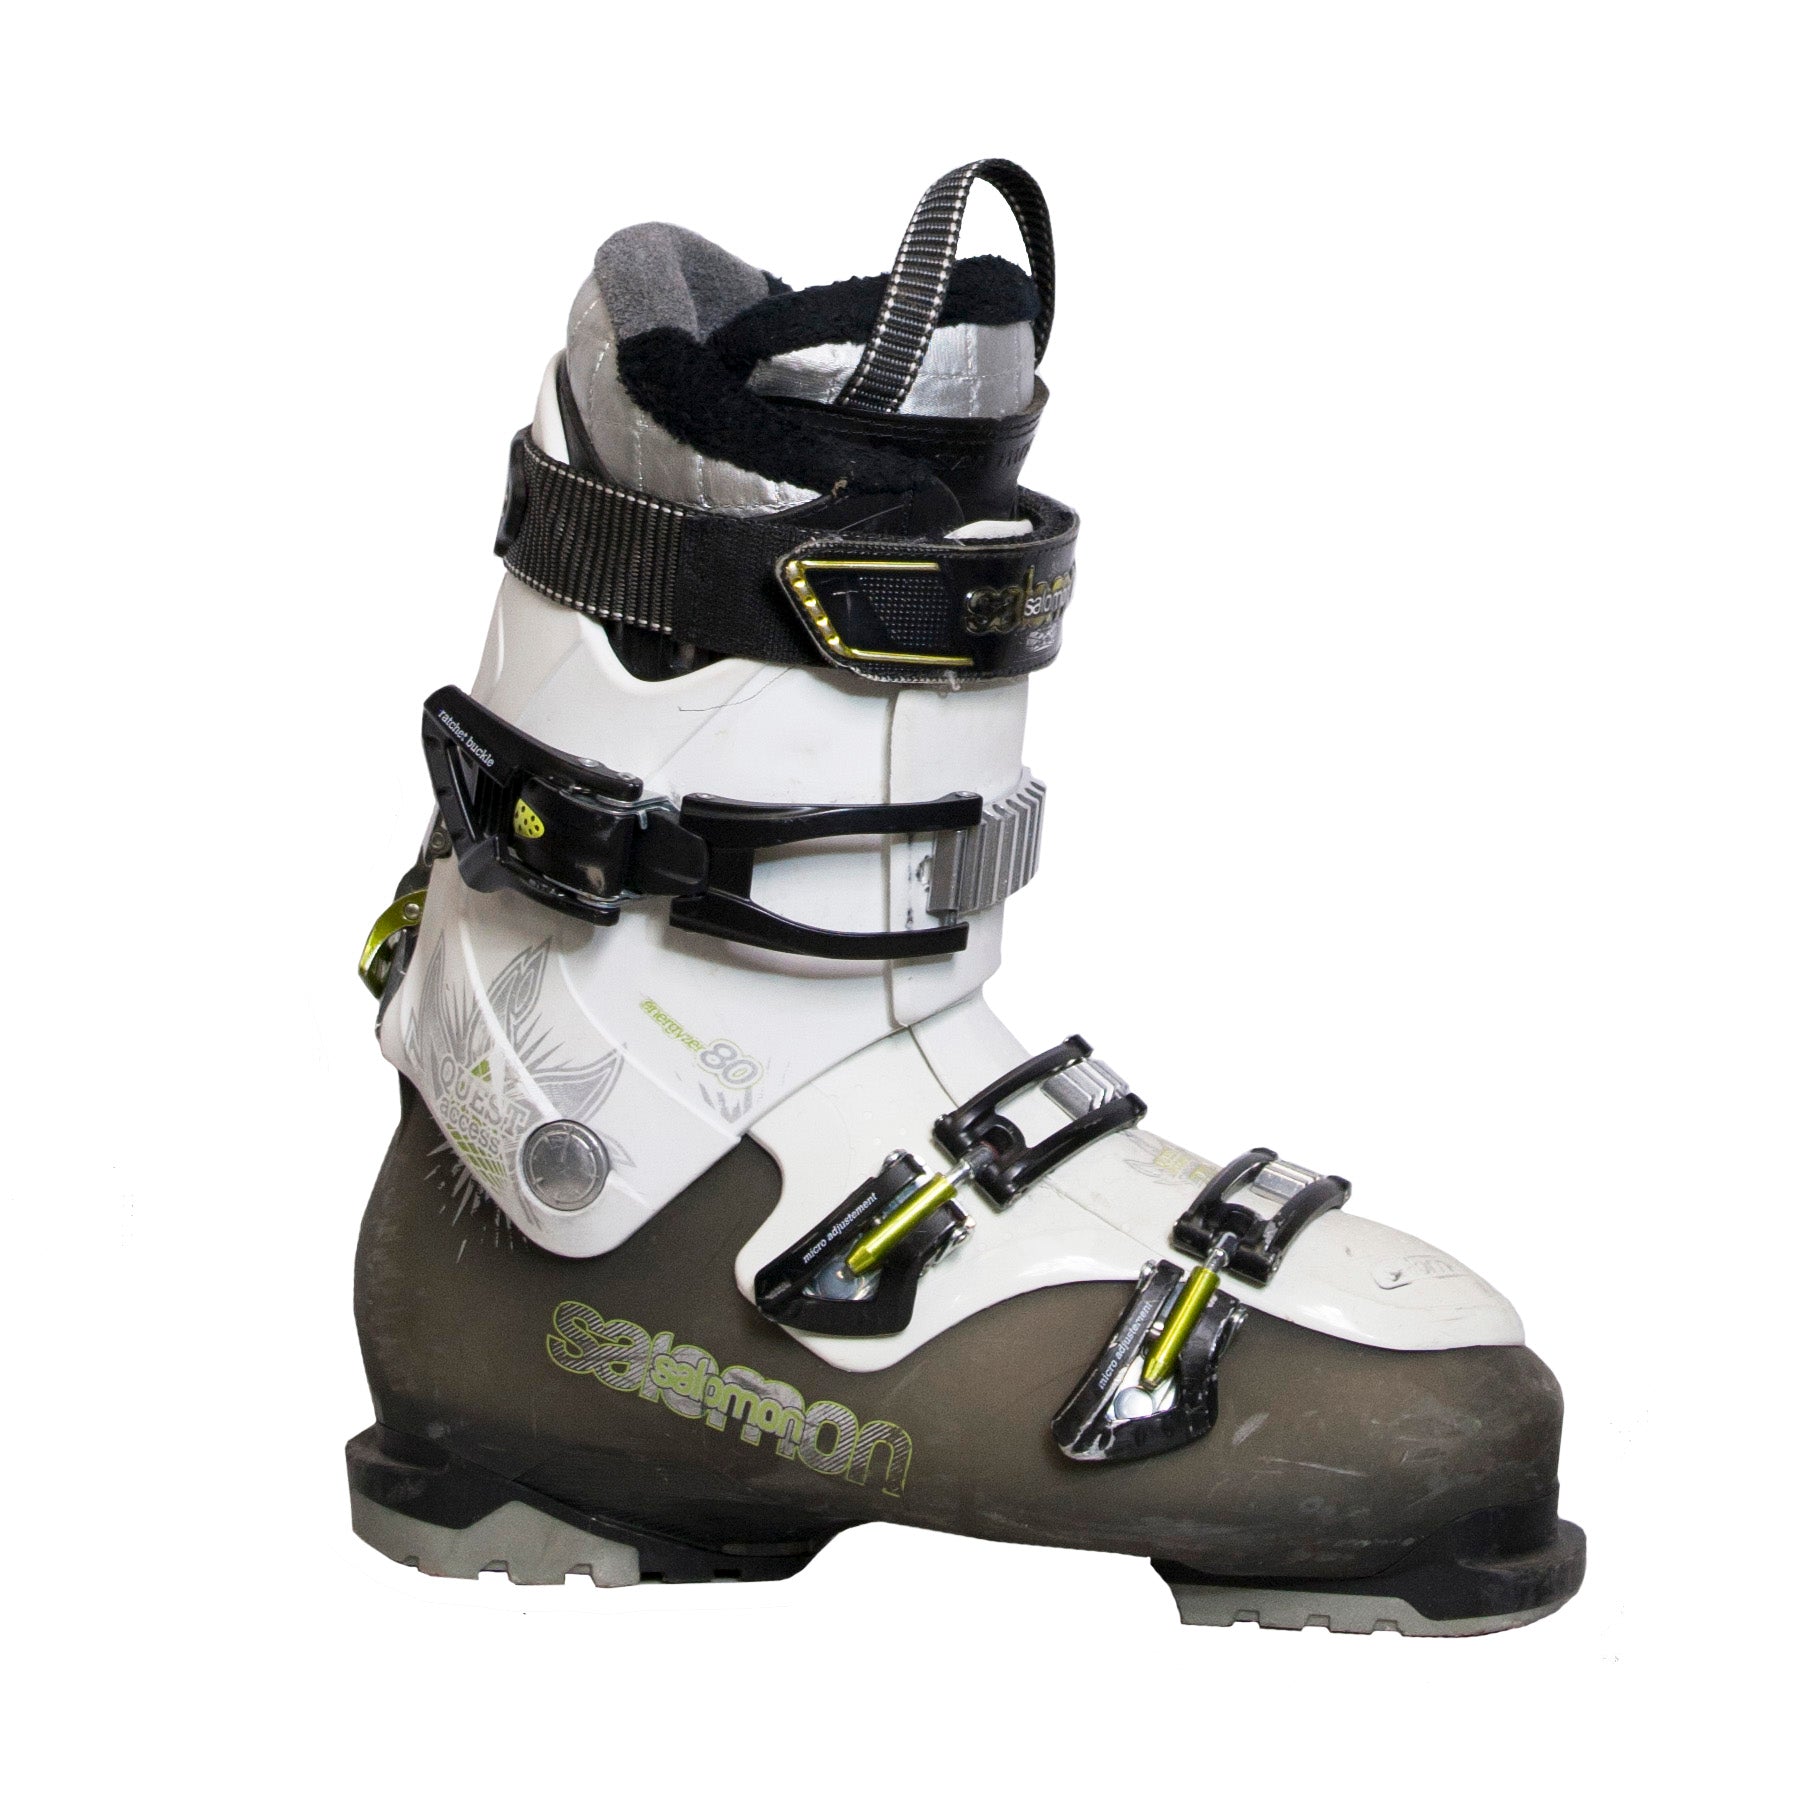 daar ben ik het mee eens verkenner Verduisteren Used Salomon Quest Access 80 Ski Boots - Galactic Snow Sports